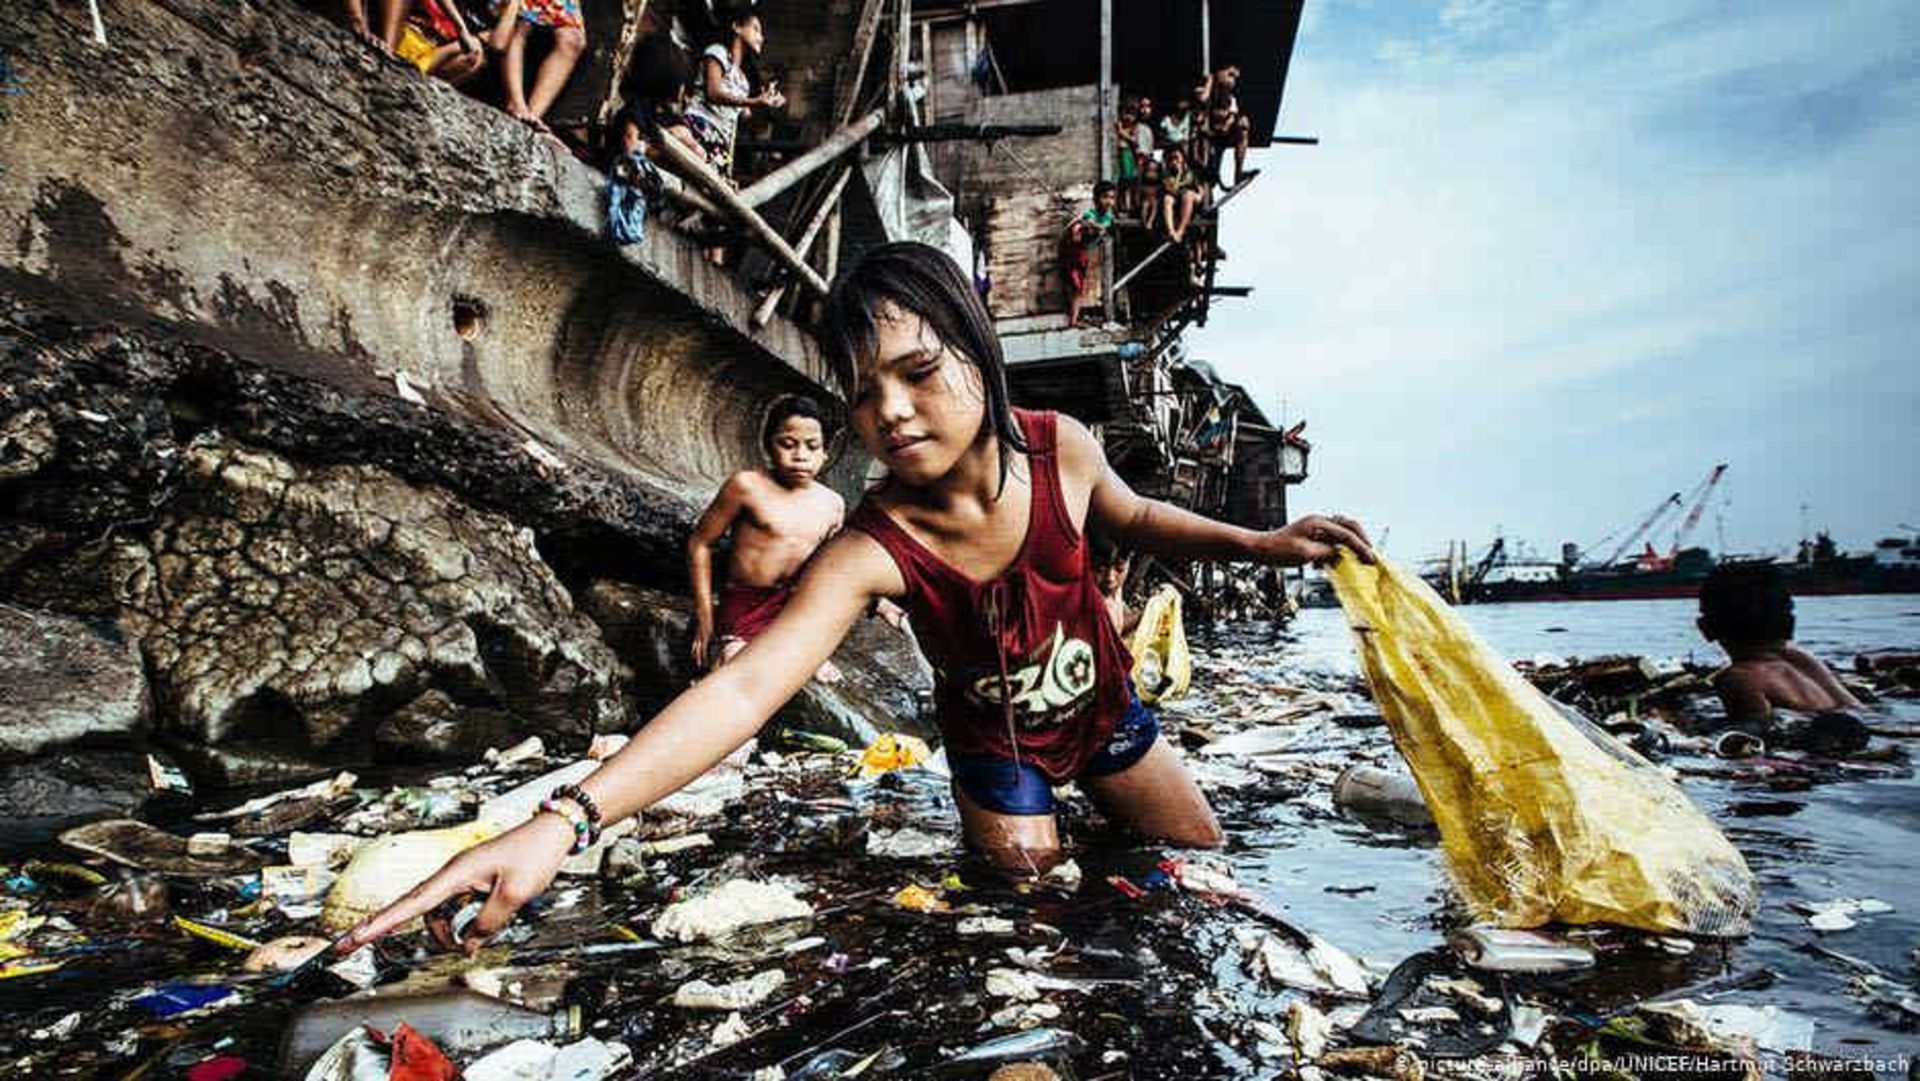 روایت فقر در بندر مانیل برنده عکس سال یونیسف شد